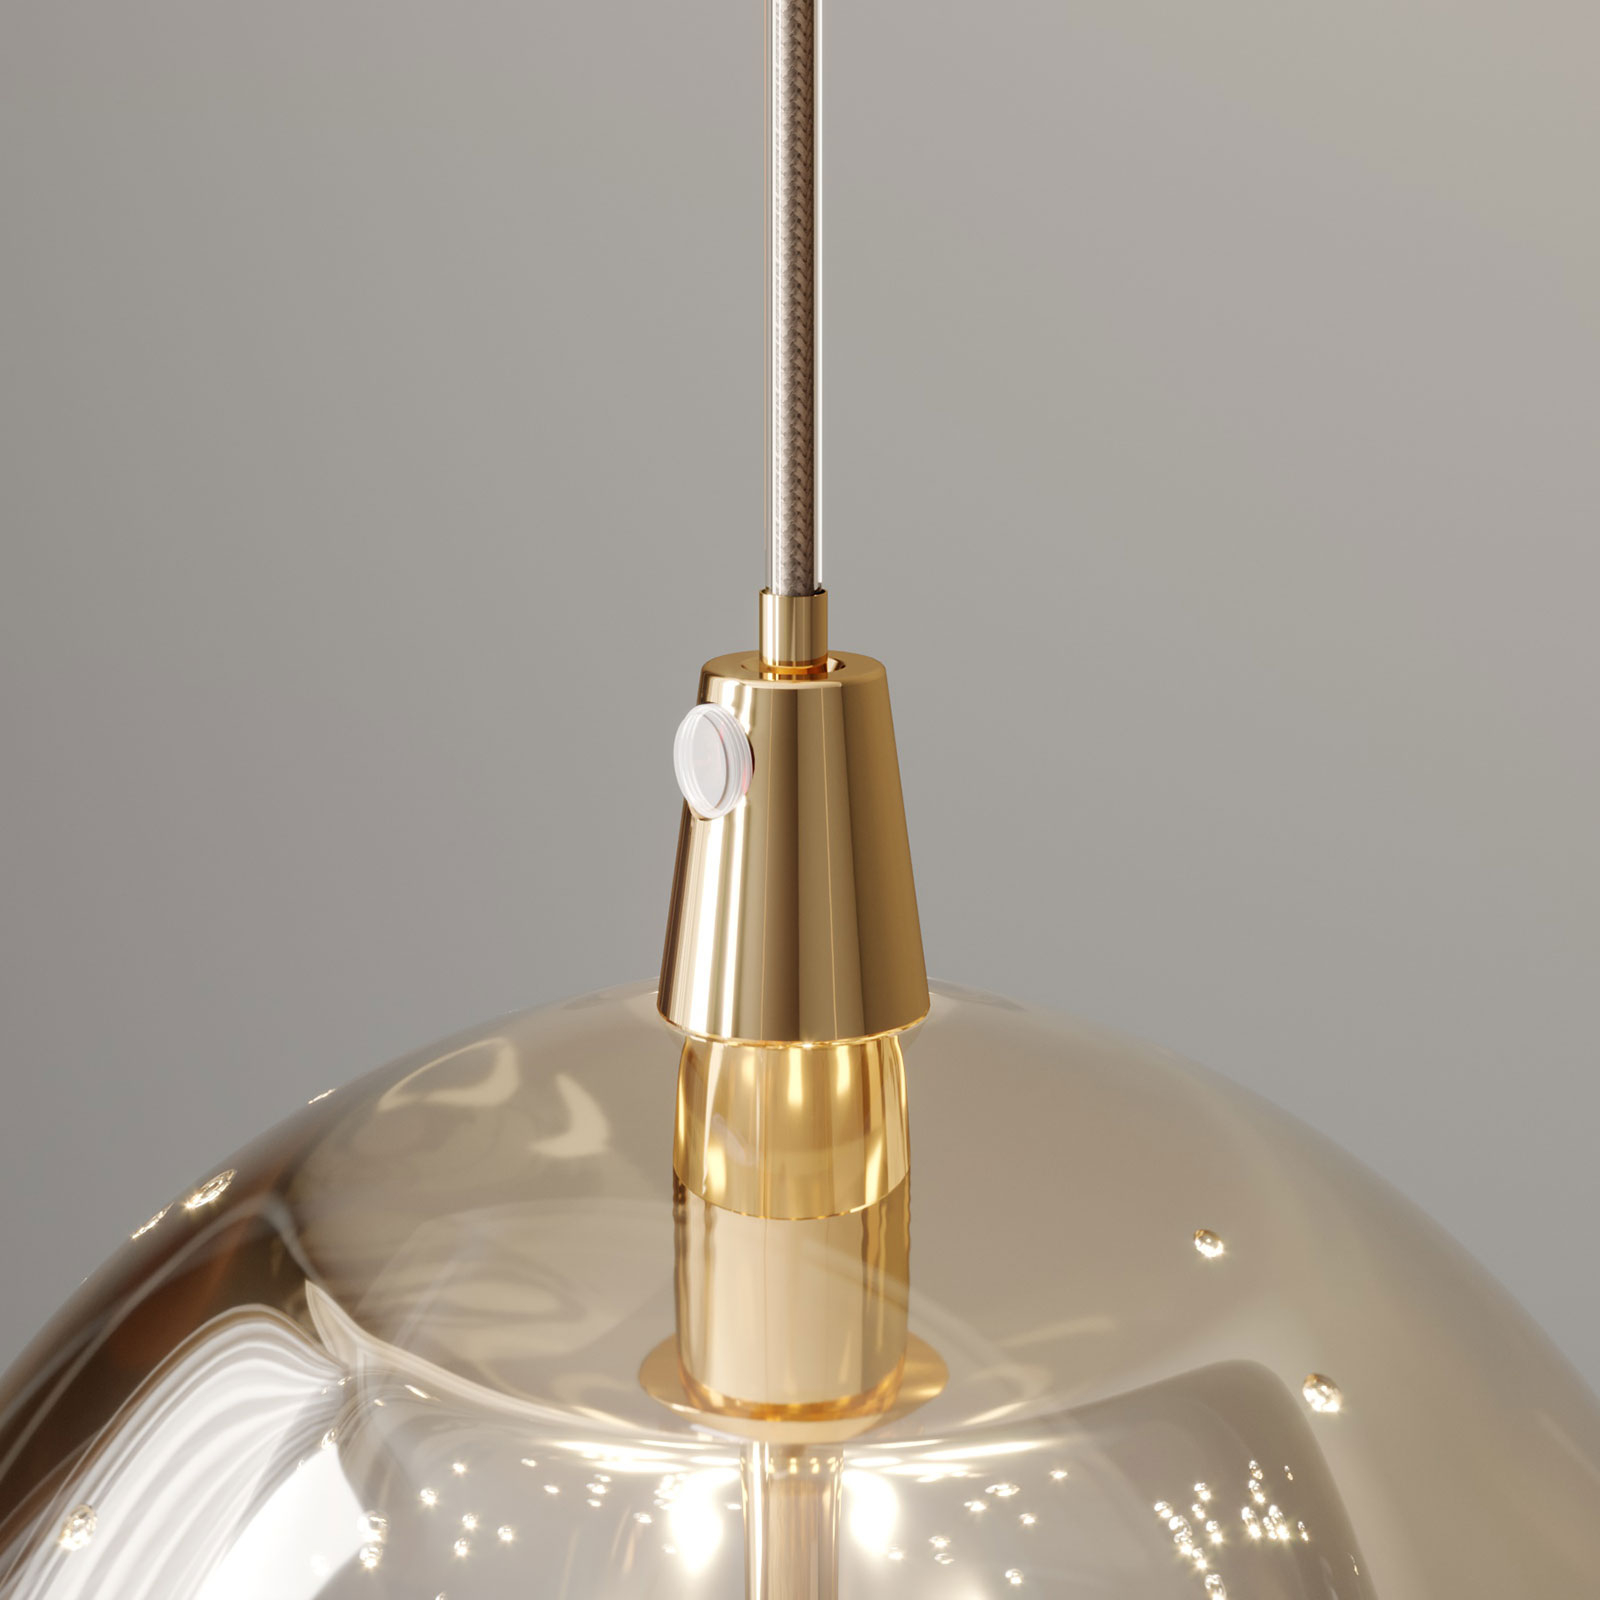 LED-Pendellampe Hayley m. Glaskugeln, 3-fl., gold